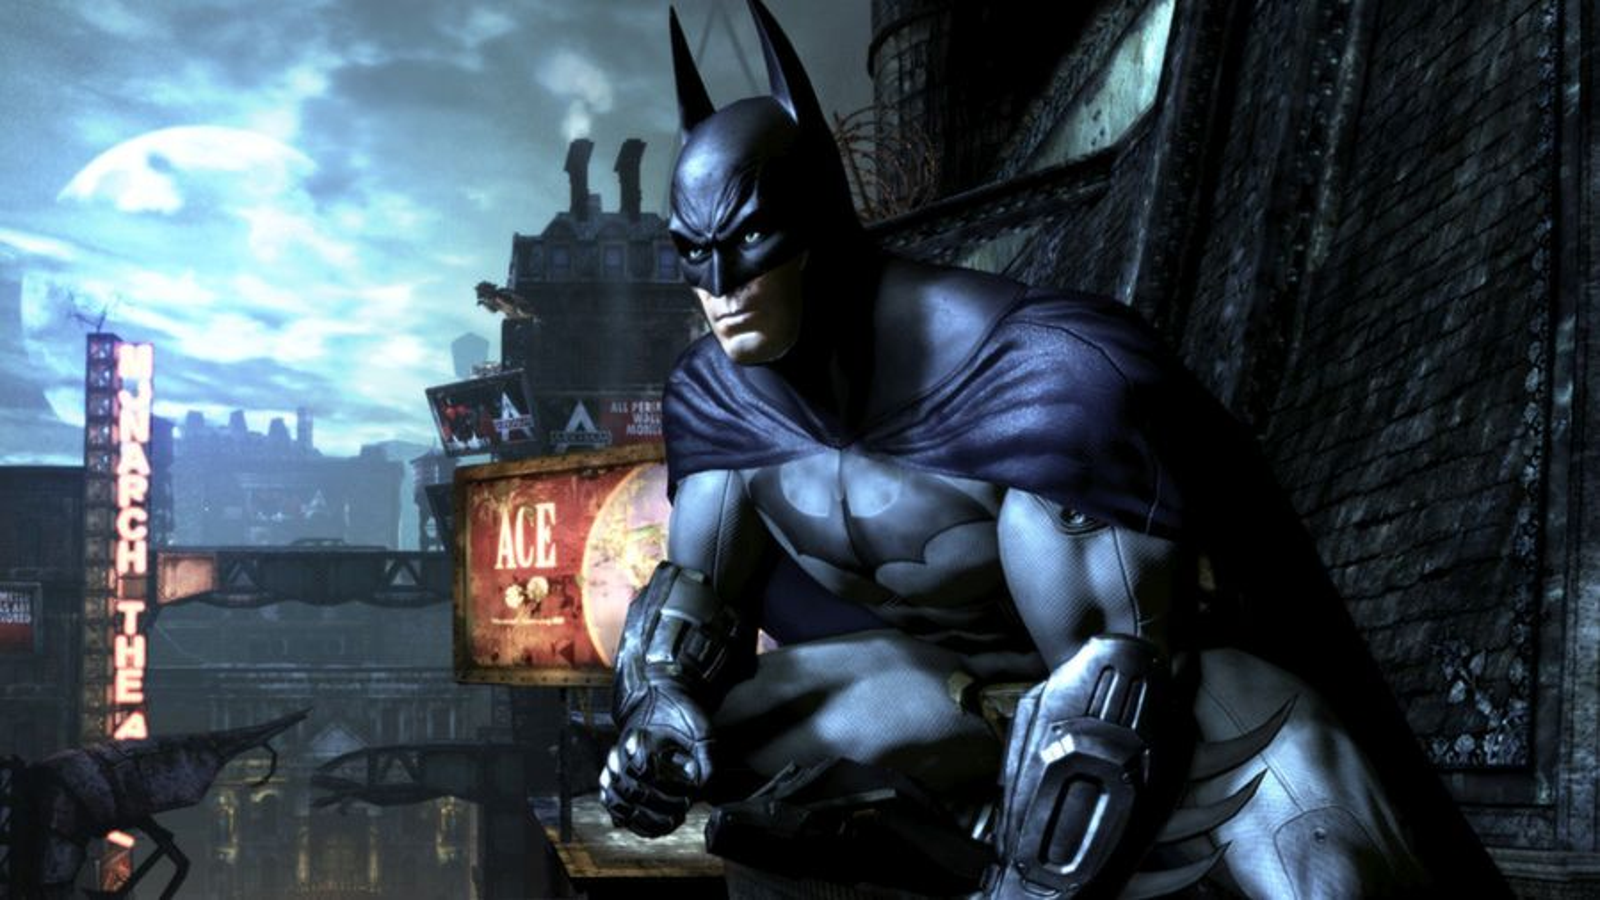 batman arkham origins ps4 - Google Search  Batman arkham origins, Batman  arkham, Batman